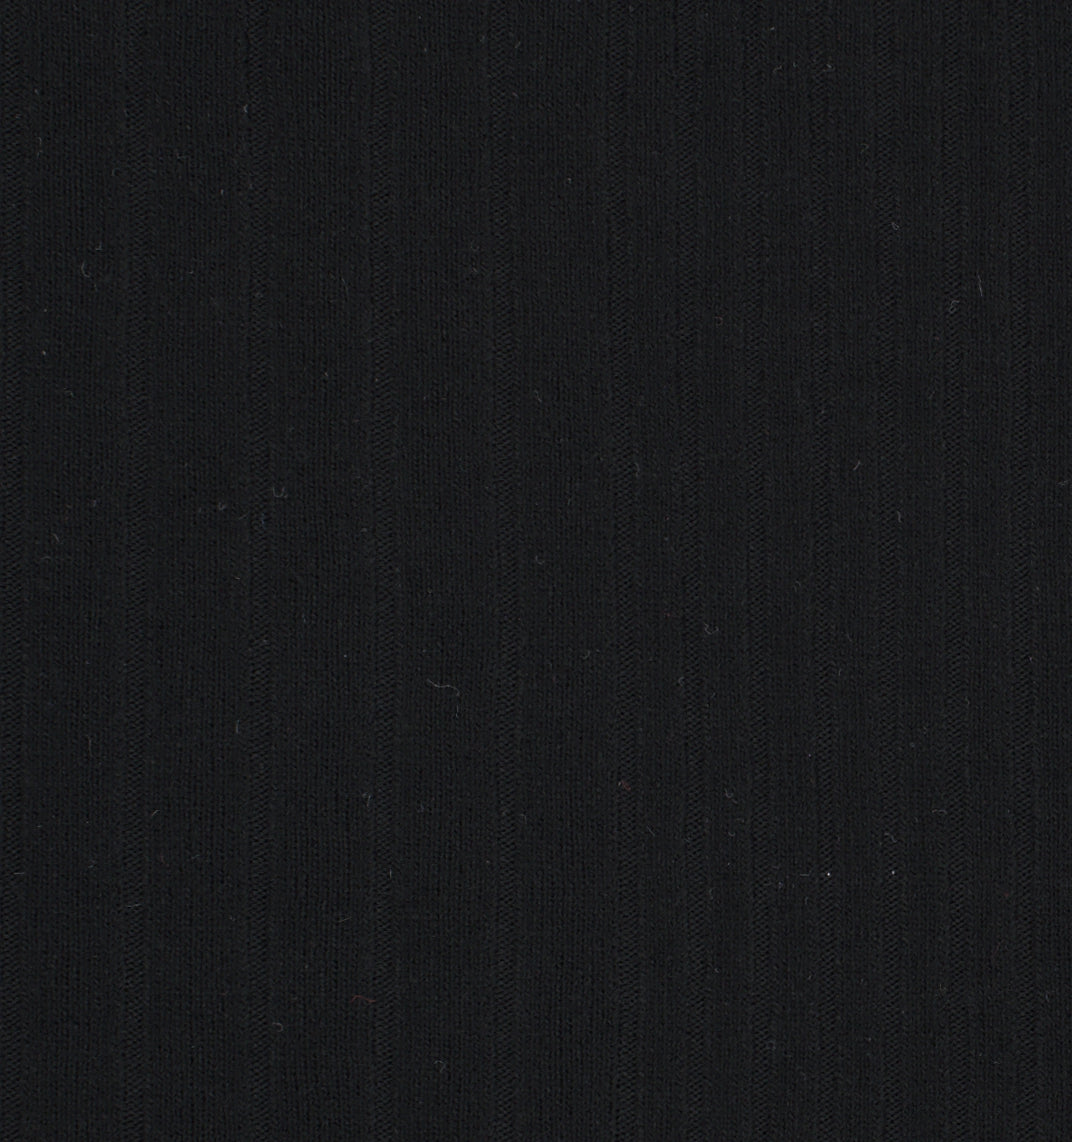 17002-04 Black Corduroy Plain Dyed Blend 280g/yd 50&quot; black blend corduroy knit plain dyed polyester rayon rib spandex Solid Color, Rib - knit fabric - woven fabric - fabric company - fabric wholesale - fabric b2b - fabric factory - high quality fabric - hong kong fabric - fabric hk - acetate fabric - cotton fabric - linen fabric - metallic fabric - nylon fabric - polyester fabric - spandex fabric - chun wing hing - cwh hk - fabric worldwide ship - 針織布 - 梳織布 - 布料公司- 布料批發 - 香港布料 - 秦榮興